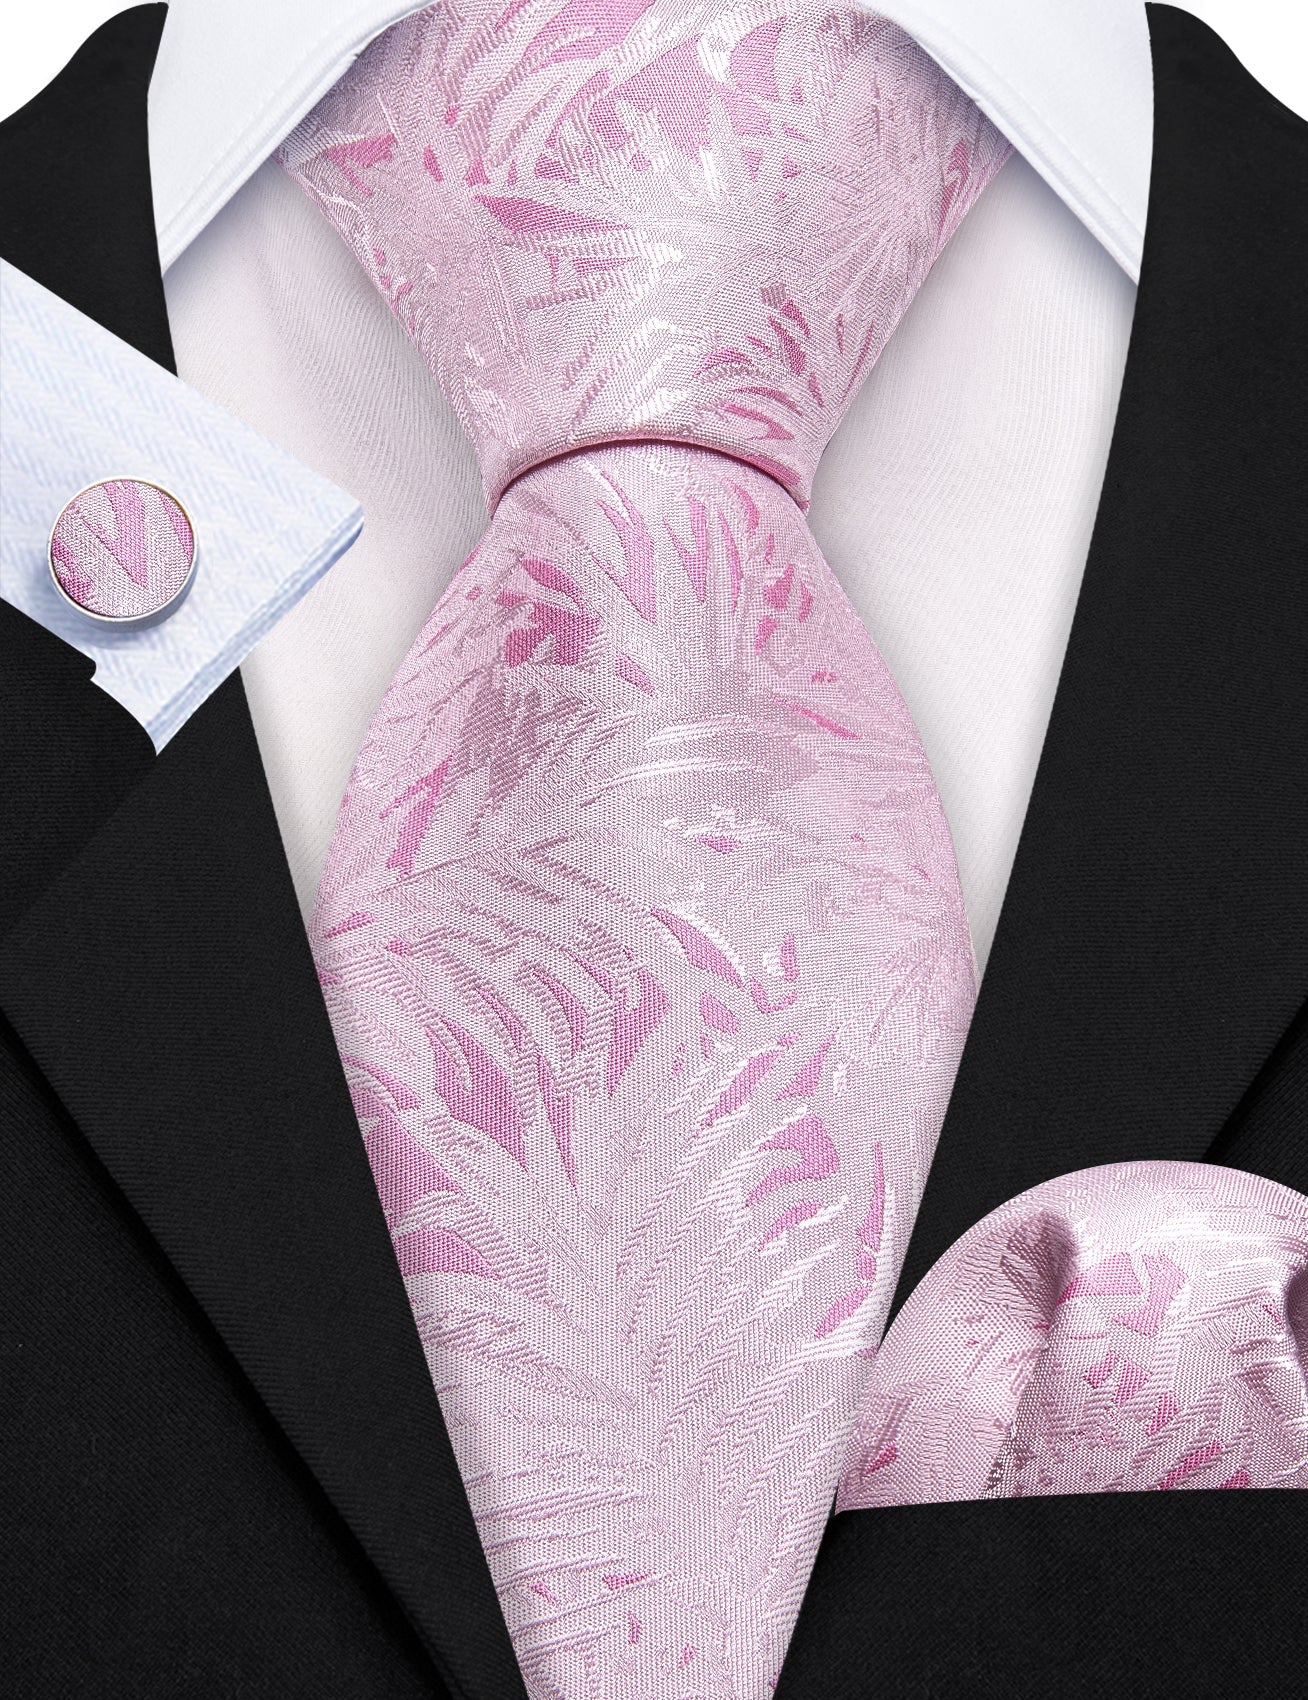 Pink White Floral Silk Tie Pocket Square Cufflinks Set